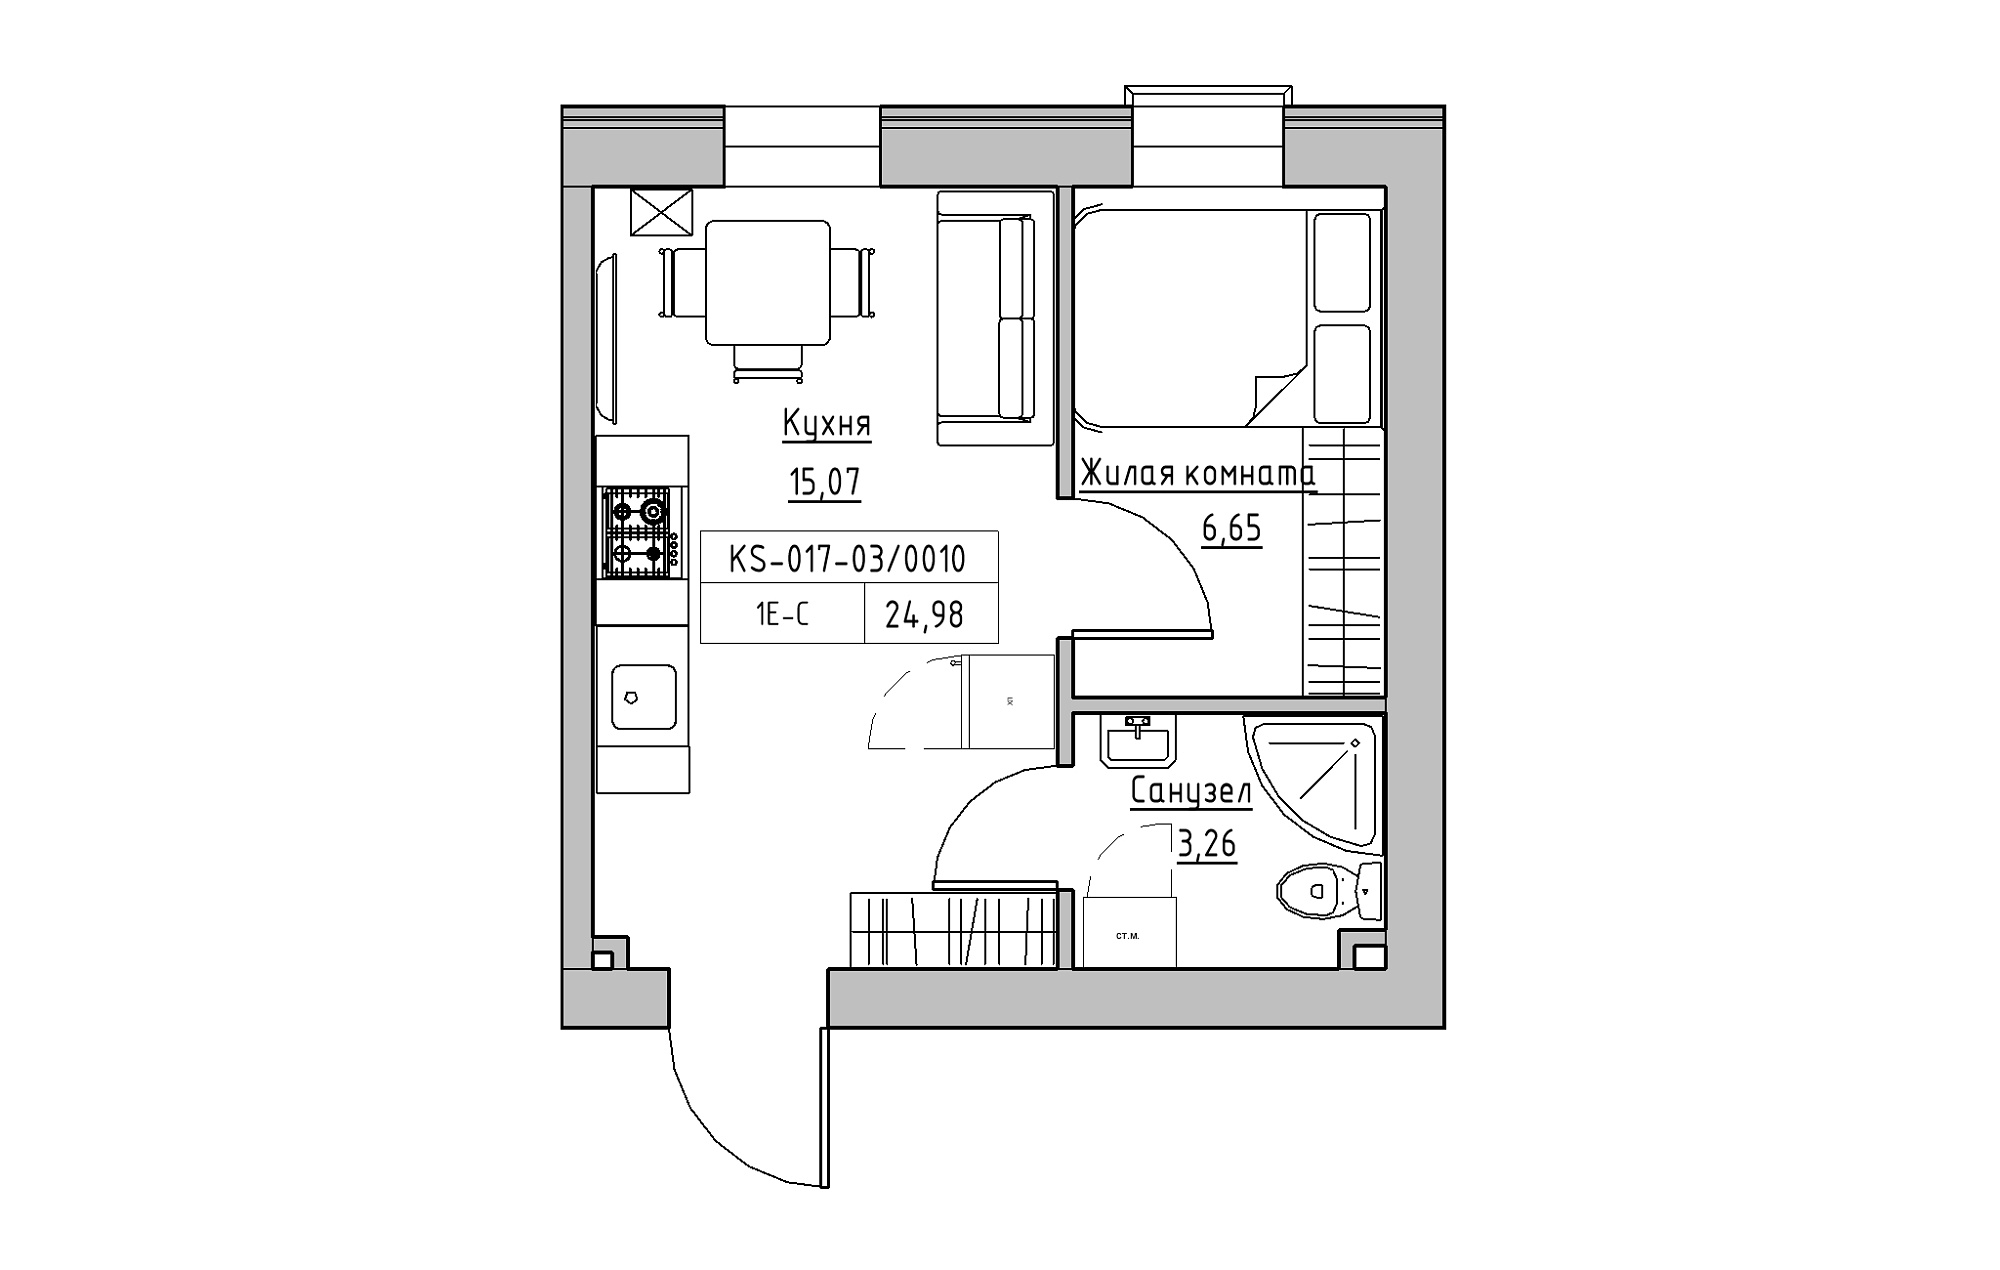 Планировка 1-к квартира площей 24.98м2, KS-017-03/0010.